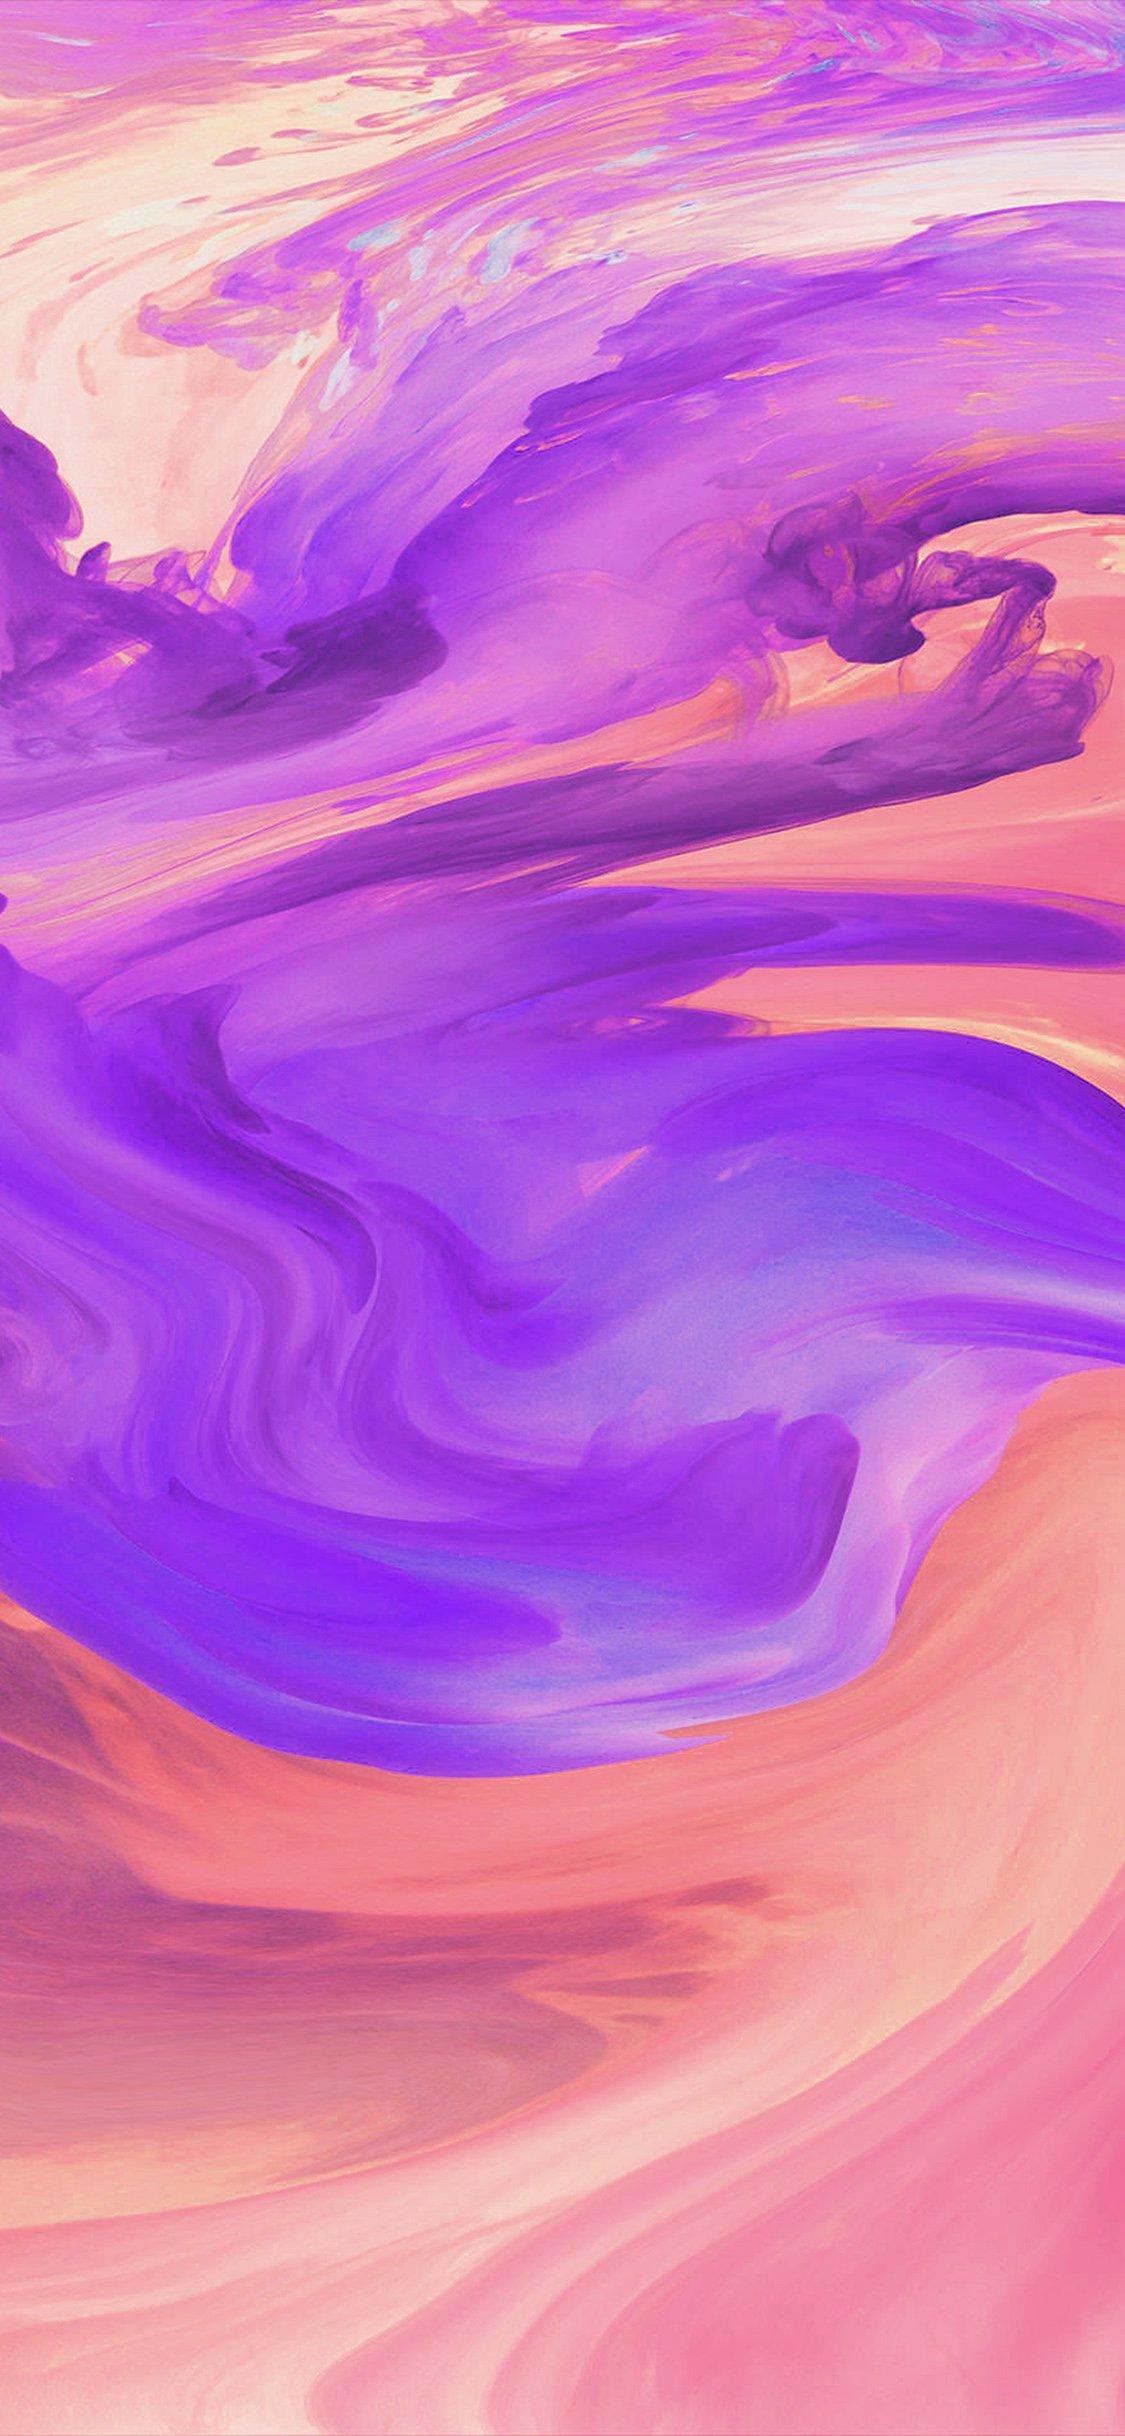 iPhone wallpaper. hurricane swirl